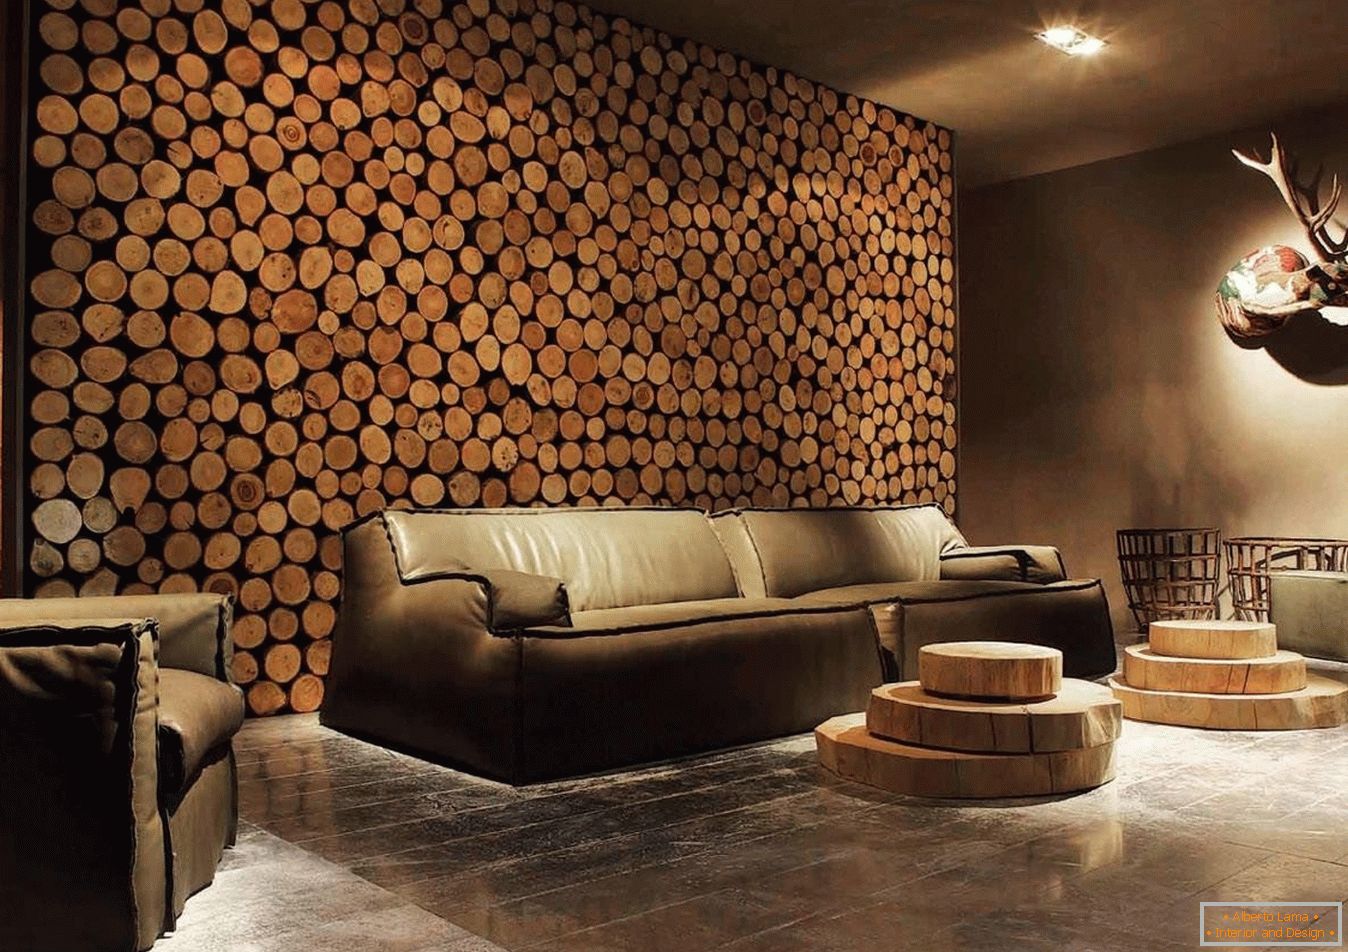 Drvene spilje od drveta kao dekoracija zidova dnevne sobe